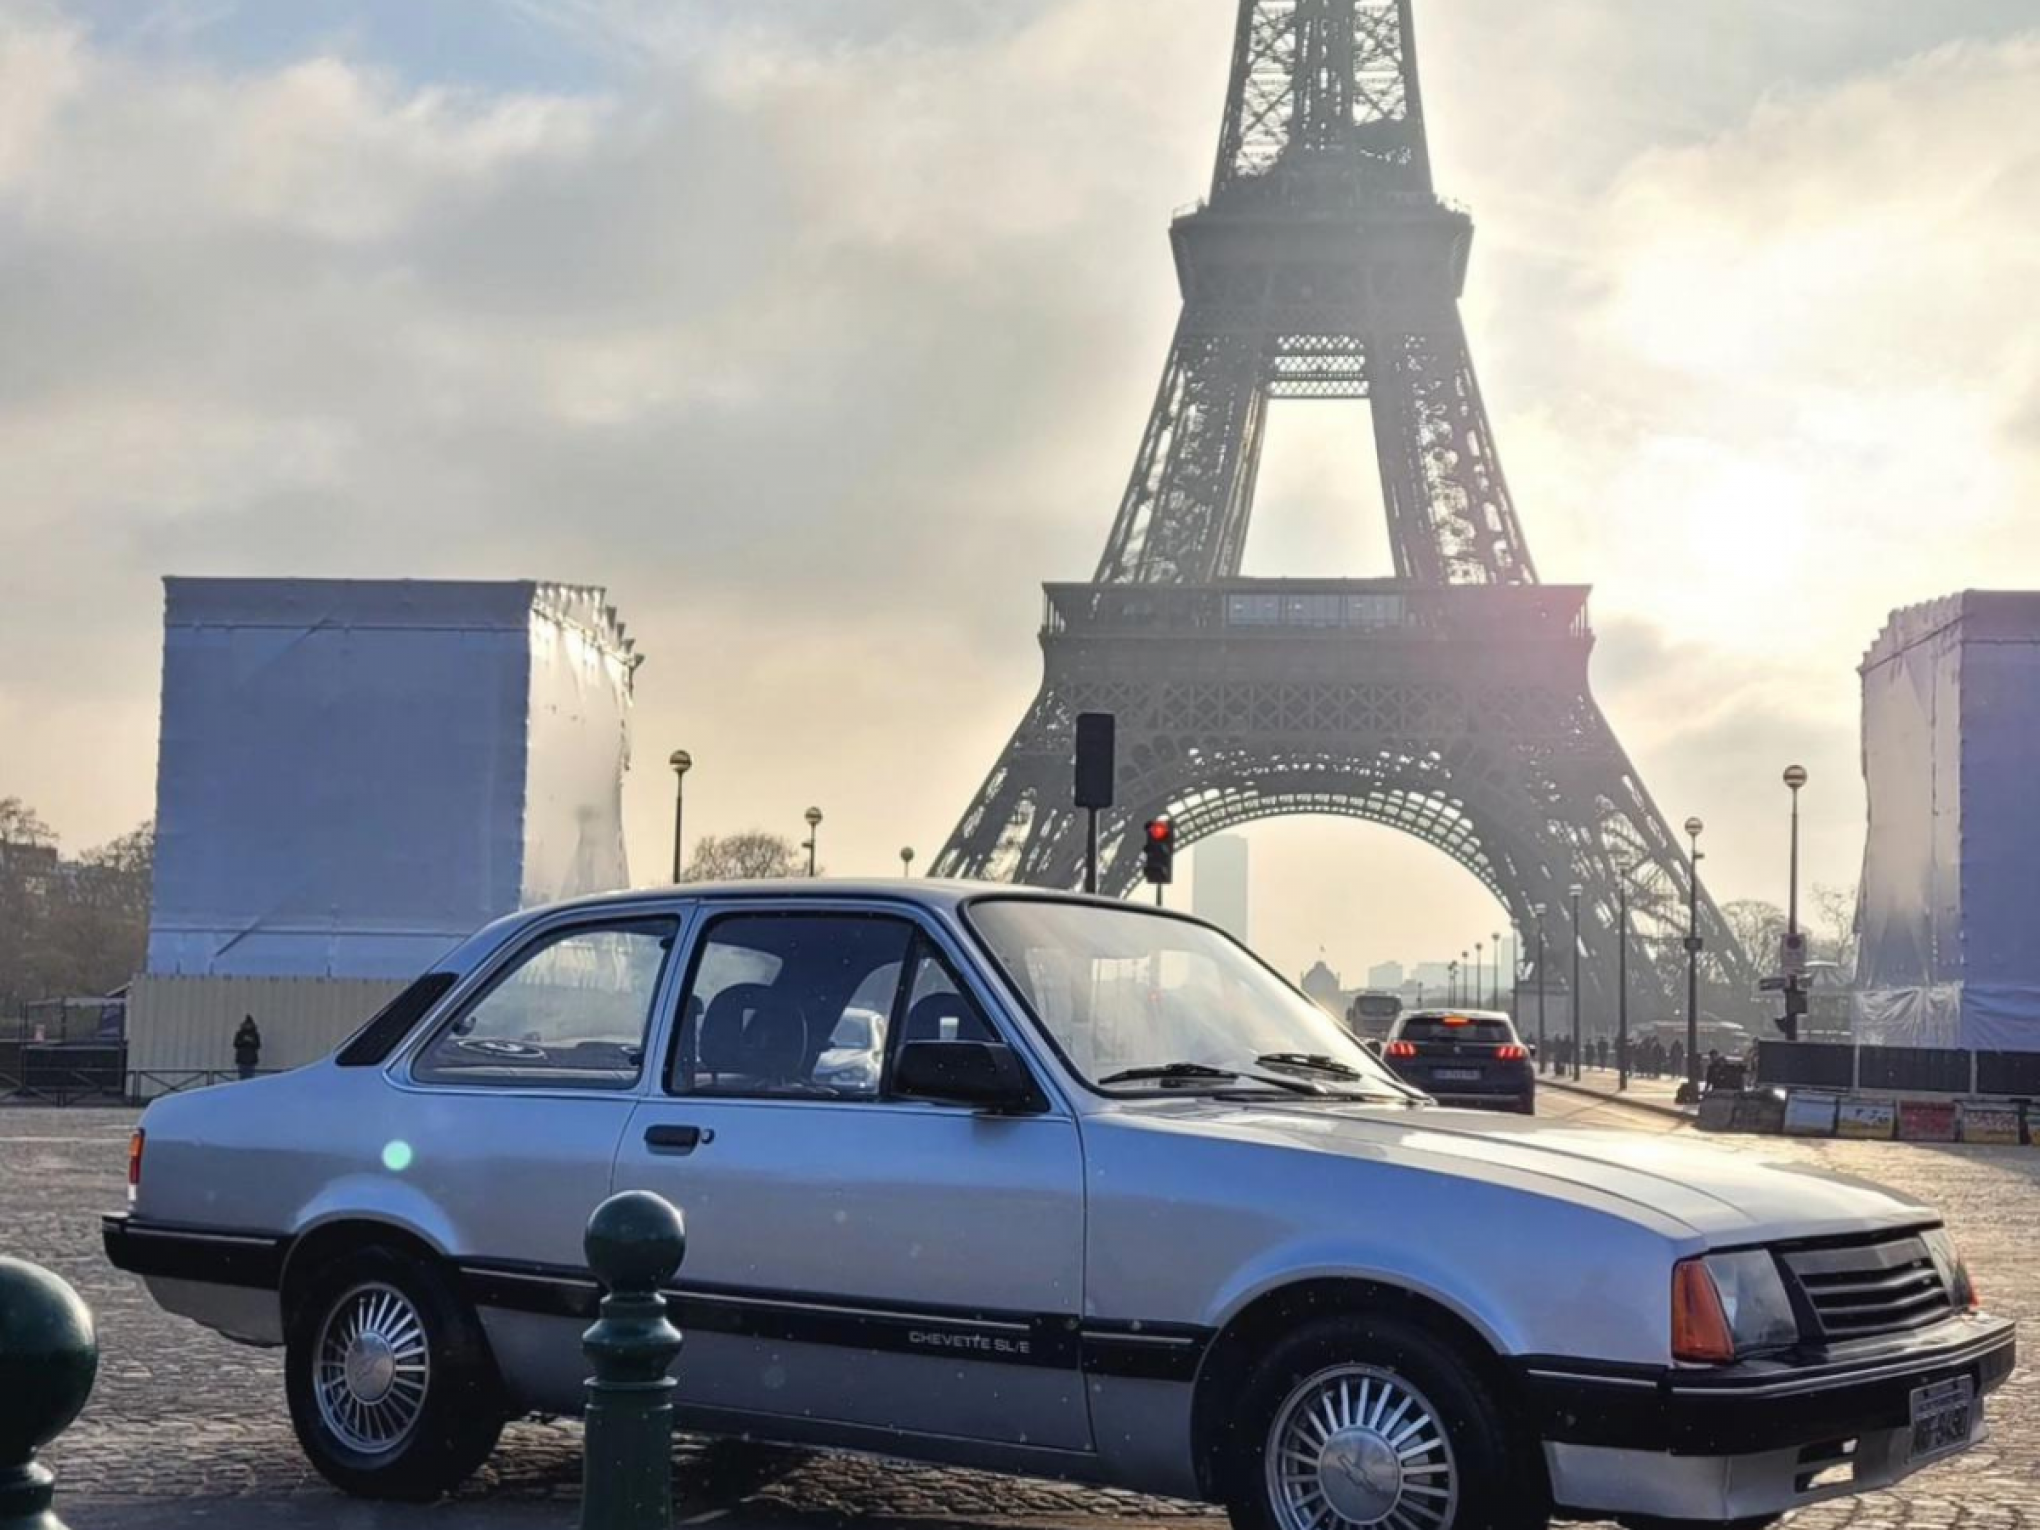 Chevette em Paris? Carro com placas de cidade brasileira chama a atenção na capital francesa